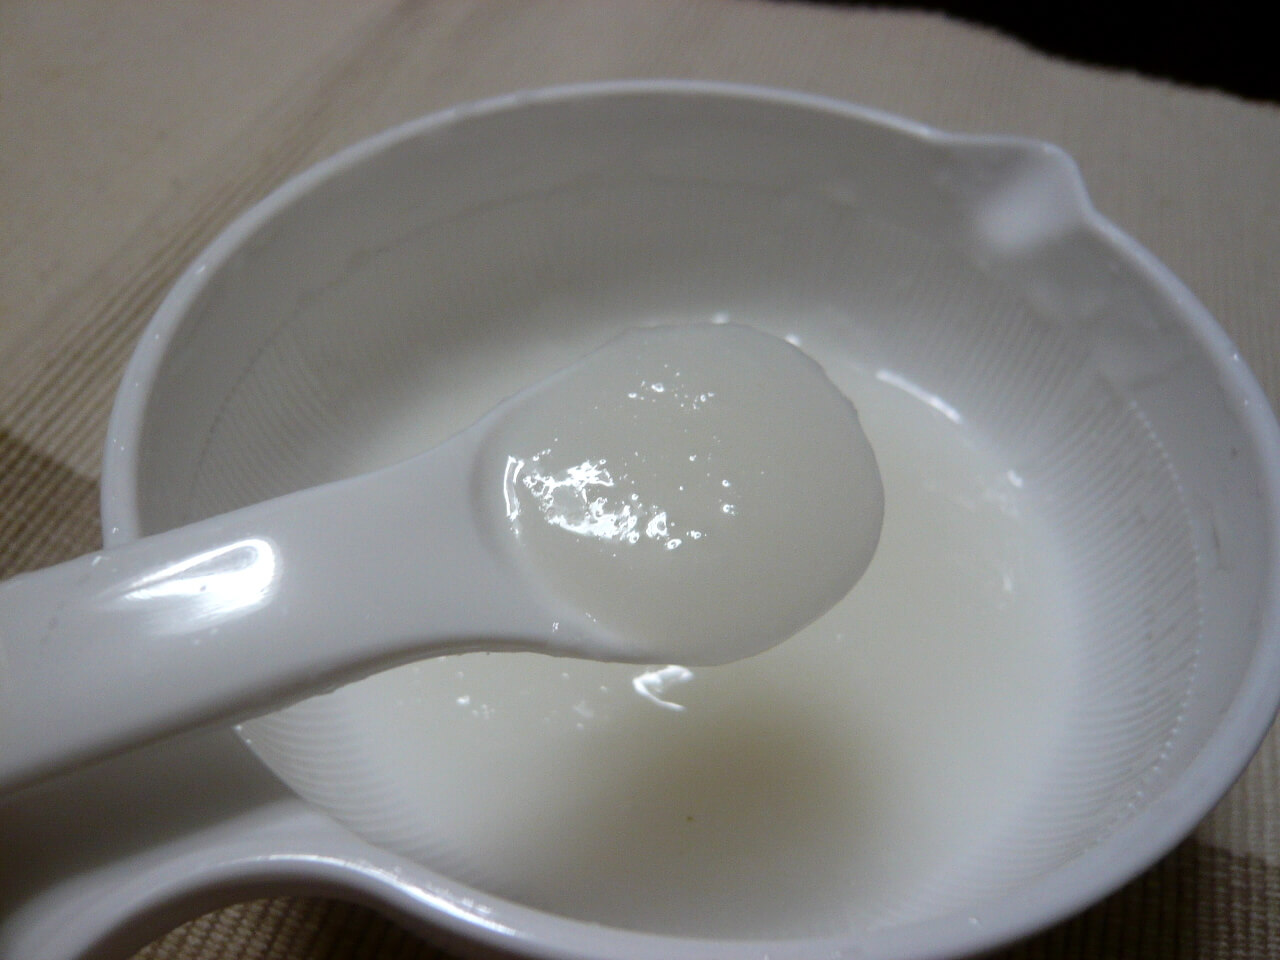 5分で簡単レシピ 冷凍ストックで作る 離乳食初期のオススメおかゆ 離乳食を作ろう